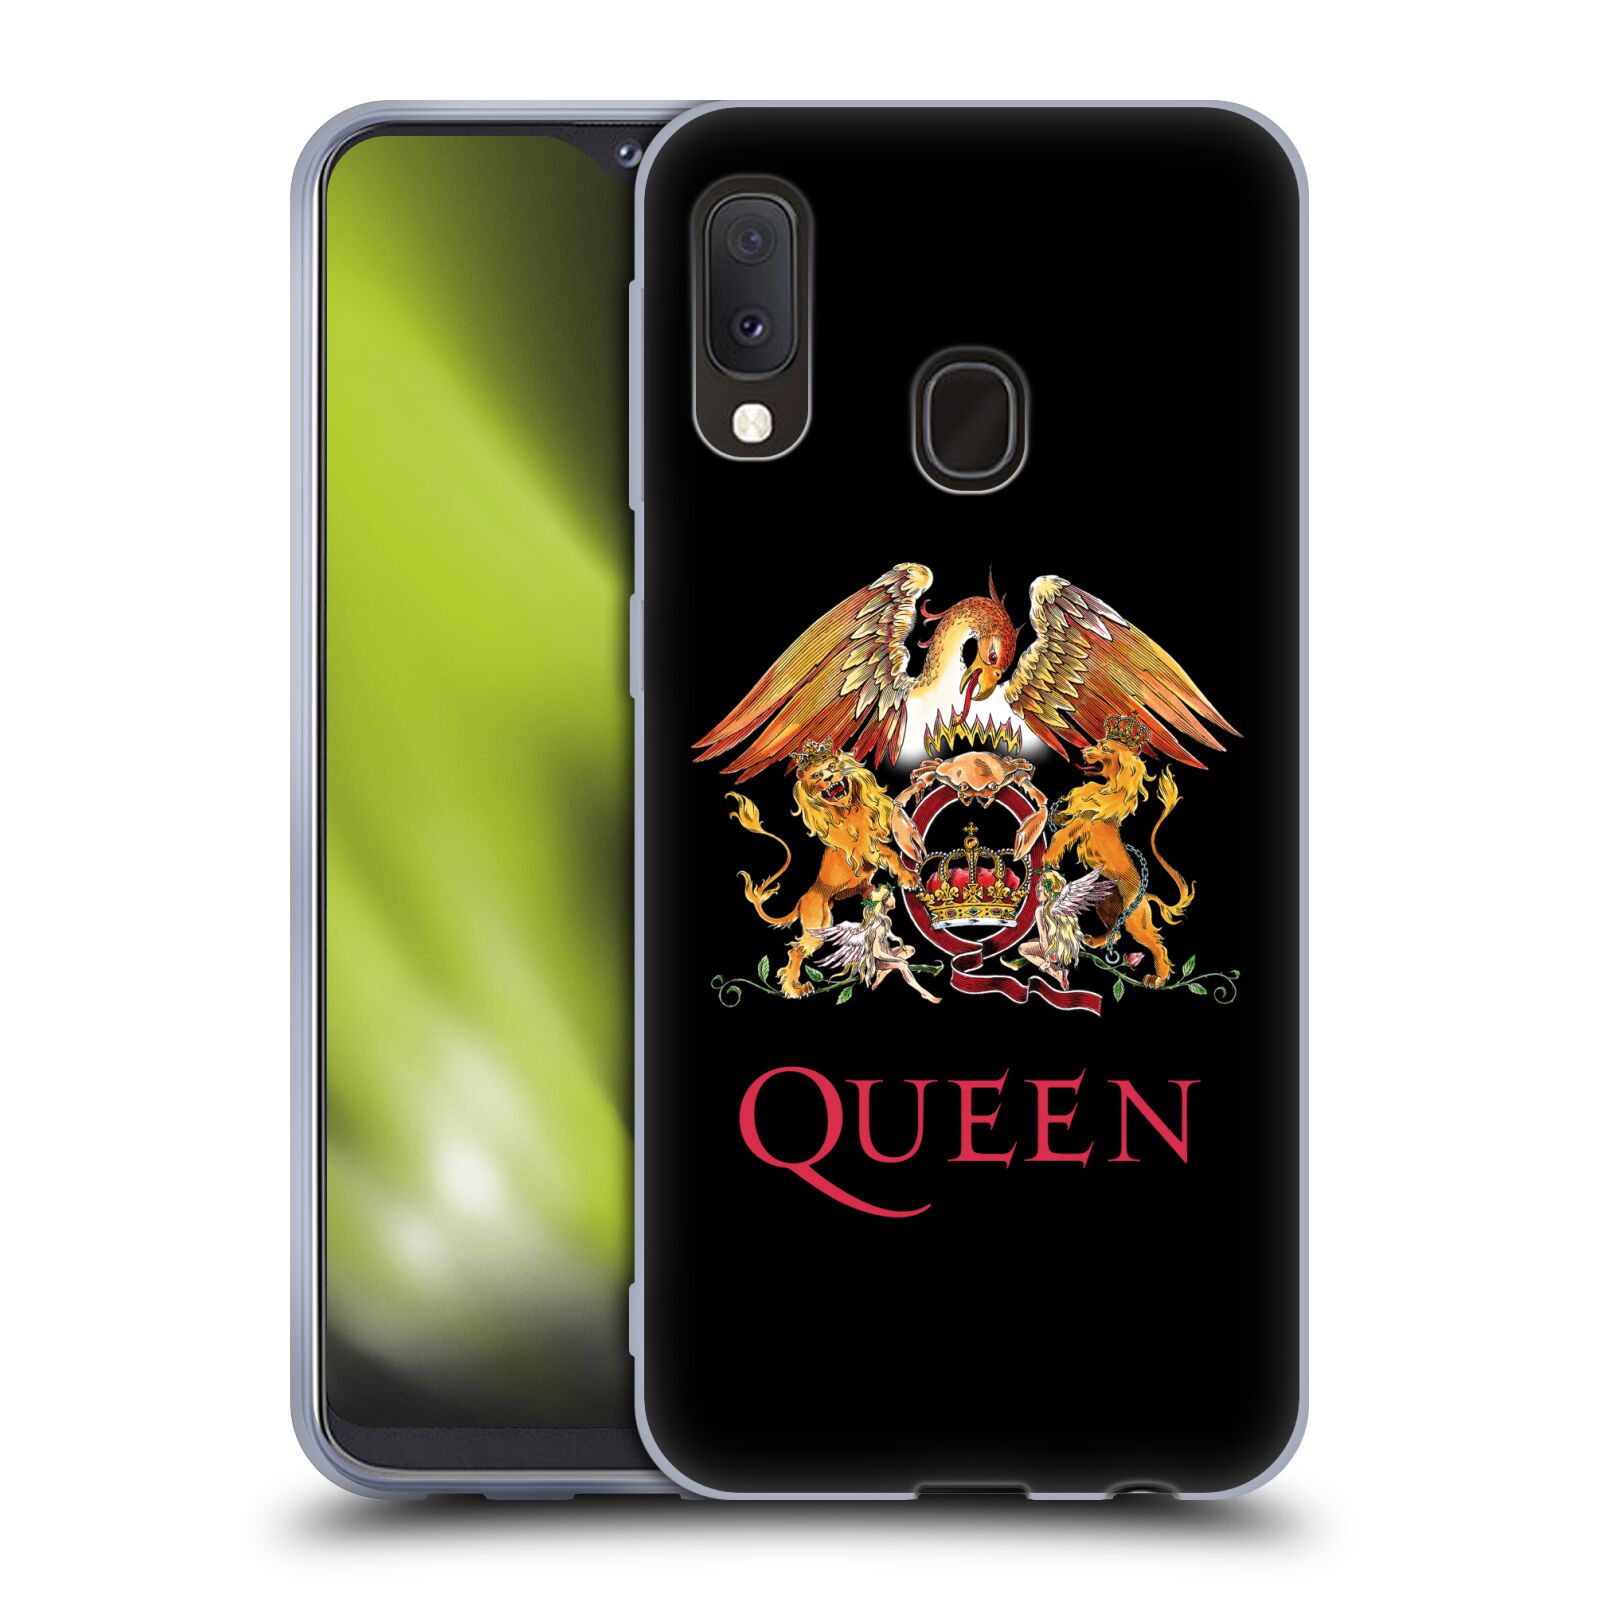 Silikonové pouzdro na mobil Samsung Galaxy A20e - Head Case - Queen - Logo